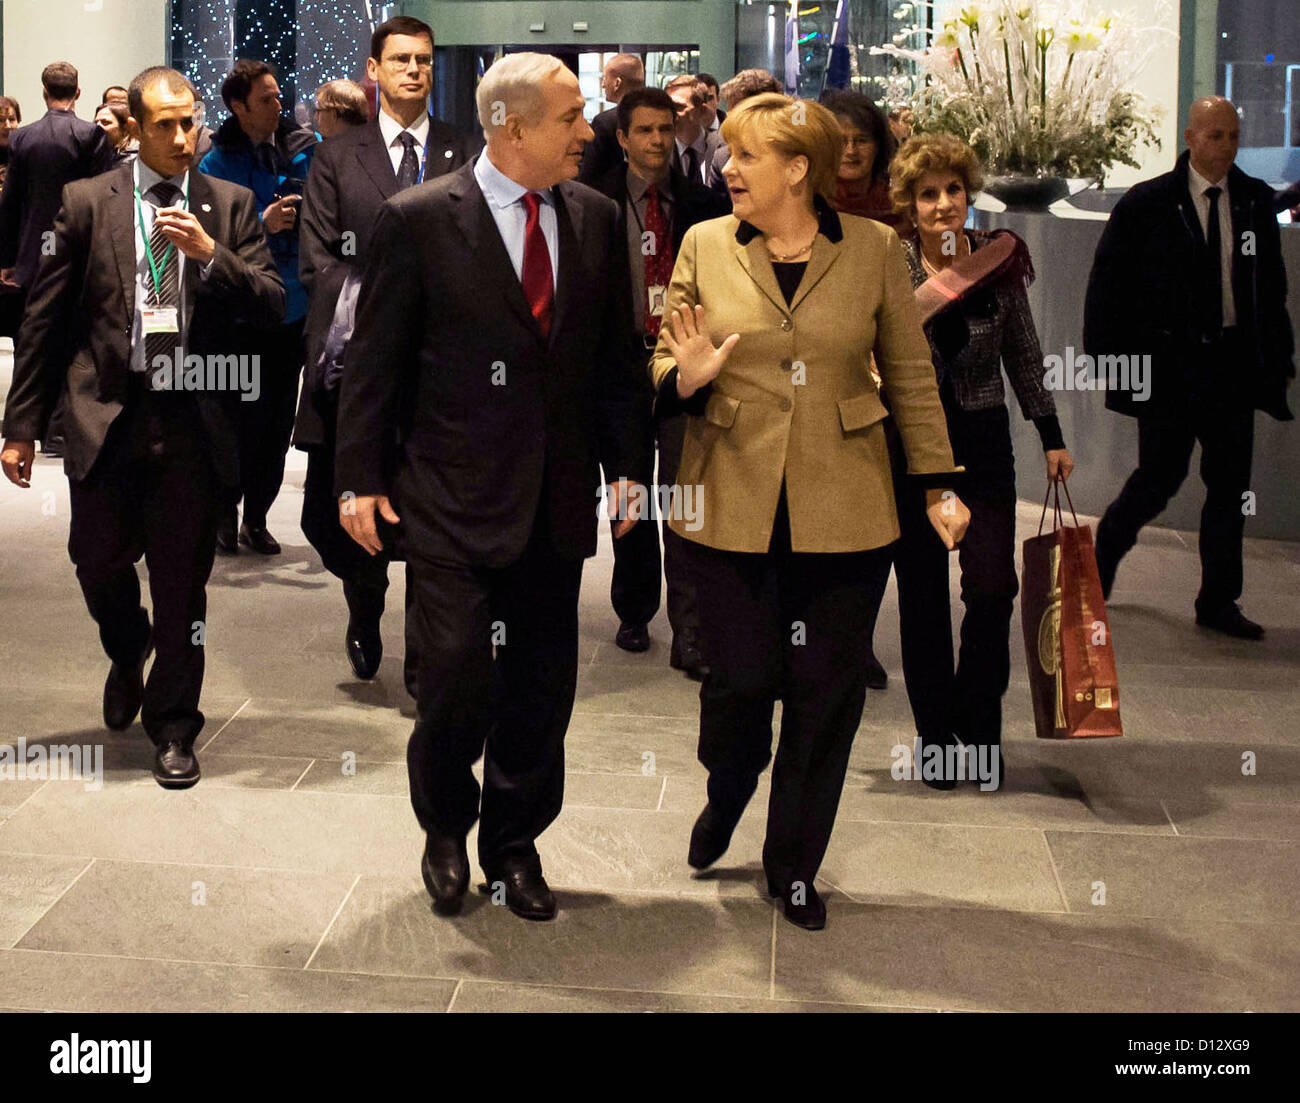 Dispensa - Bundeskanzlerin Angela Merkel (r) und der israelische Ministerpräsident Benjamin Netanjahu unterhalten sich zu Beginn ihres Treffens im Rahmen der deutsch-israelischen Regierungskonsultationen im Bundeskanzleramt. Foto: Bundesregierung/Bergmann/Pool/ dpa (Wiederholung mit engerem Bildausschnitt) Foto Stock